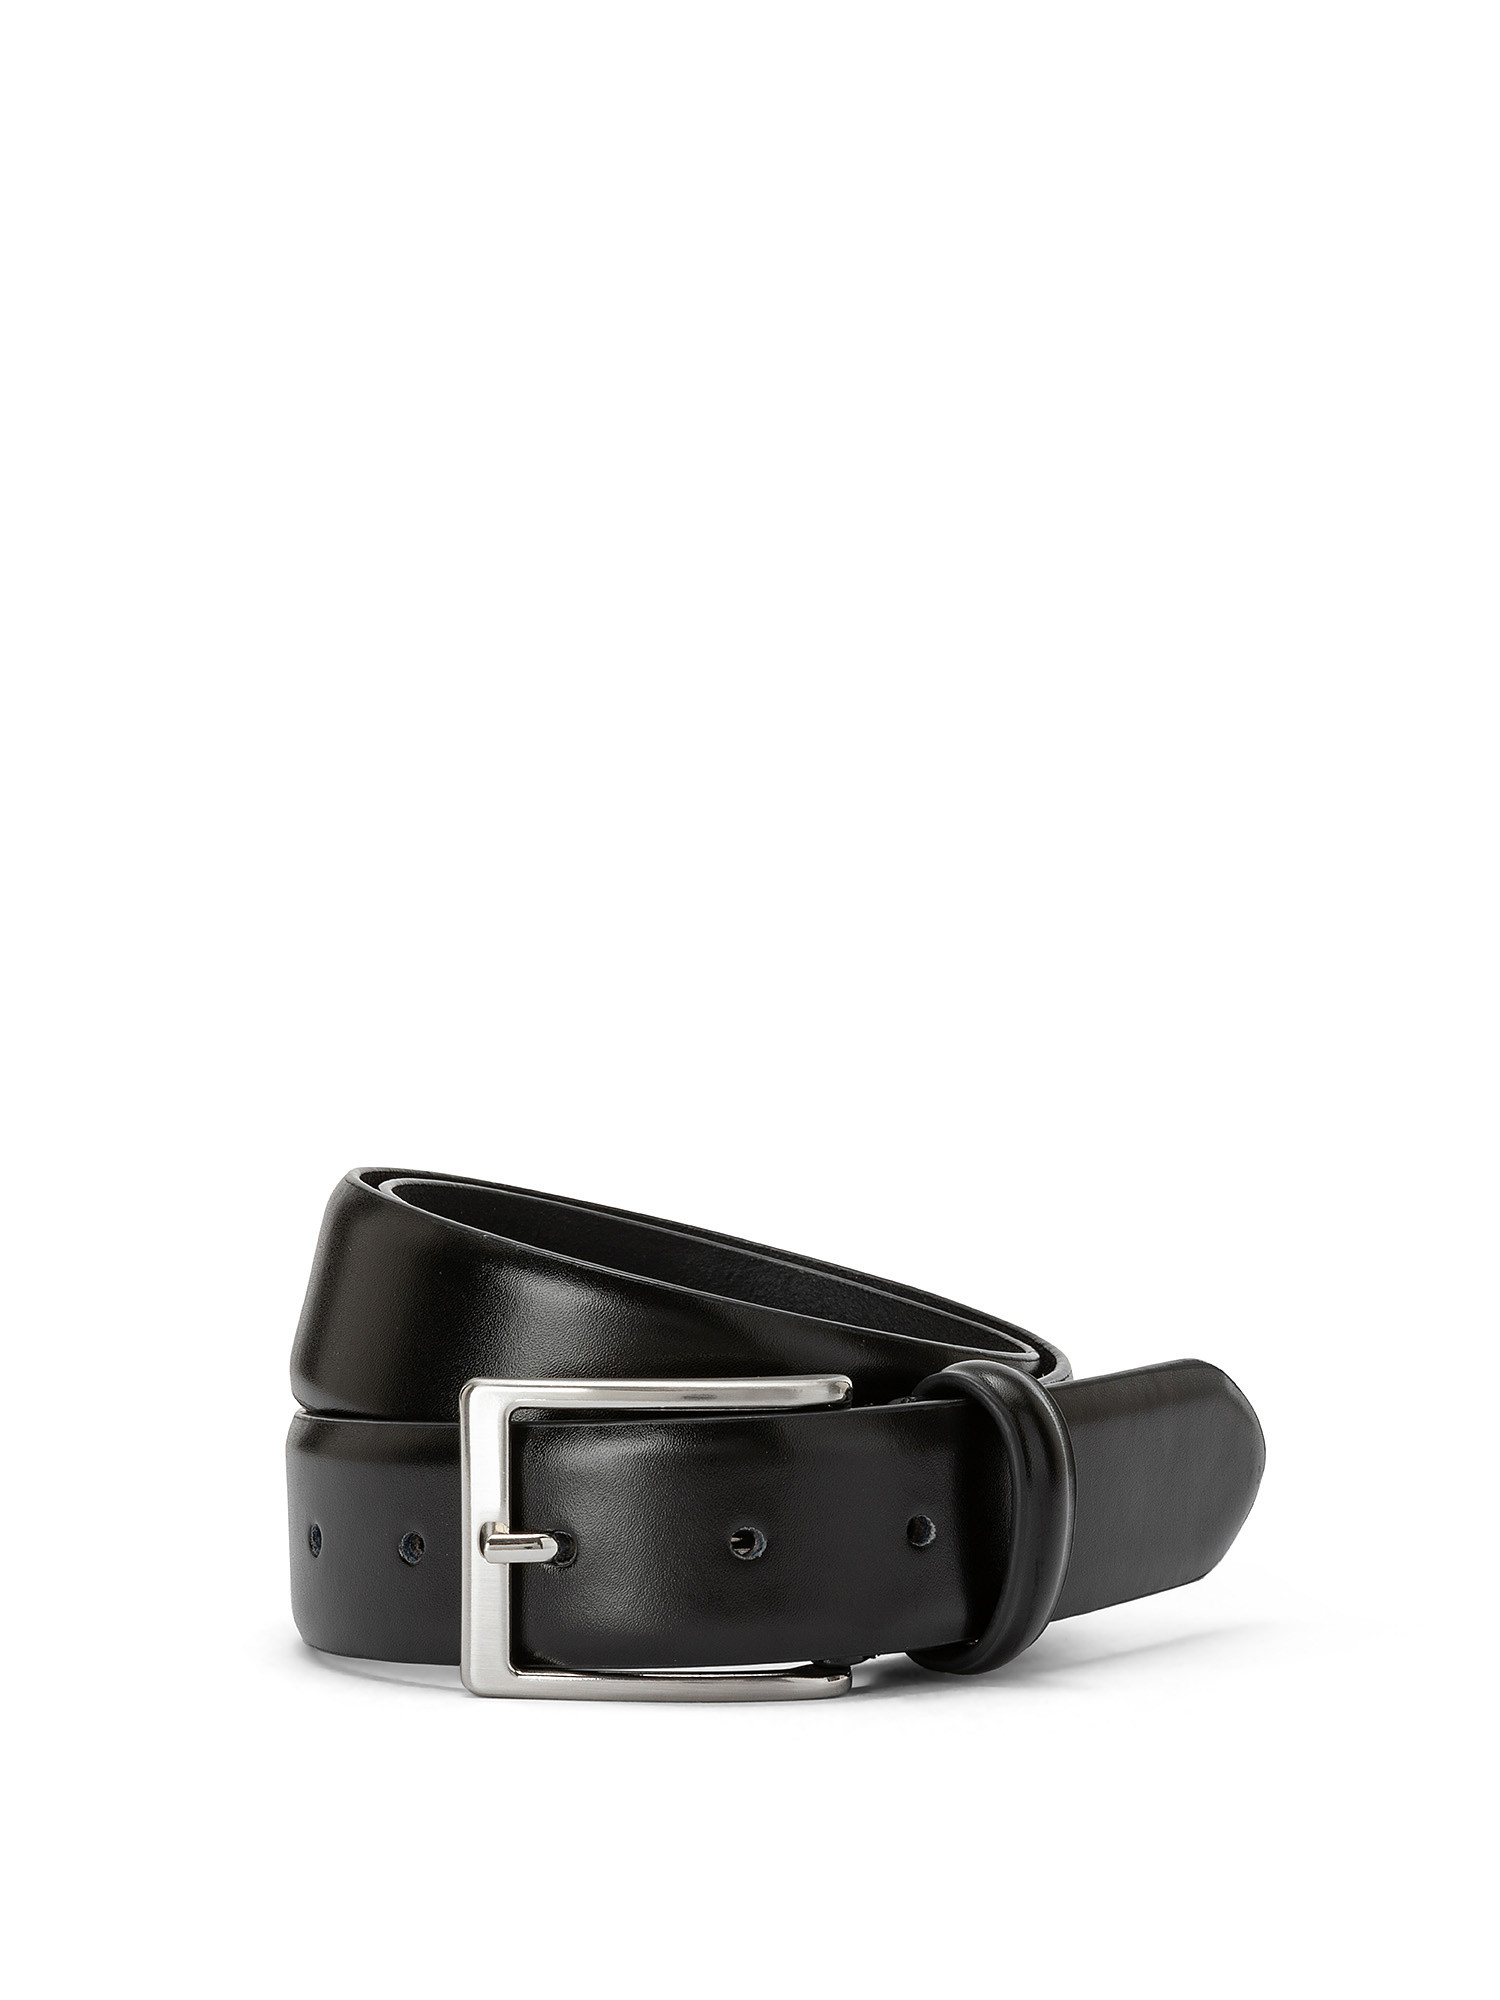 Real-leather belt, Black, large image number 0